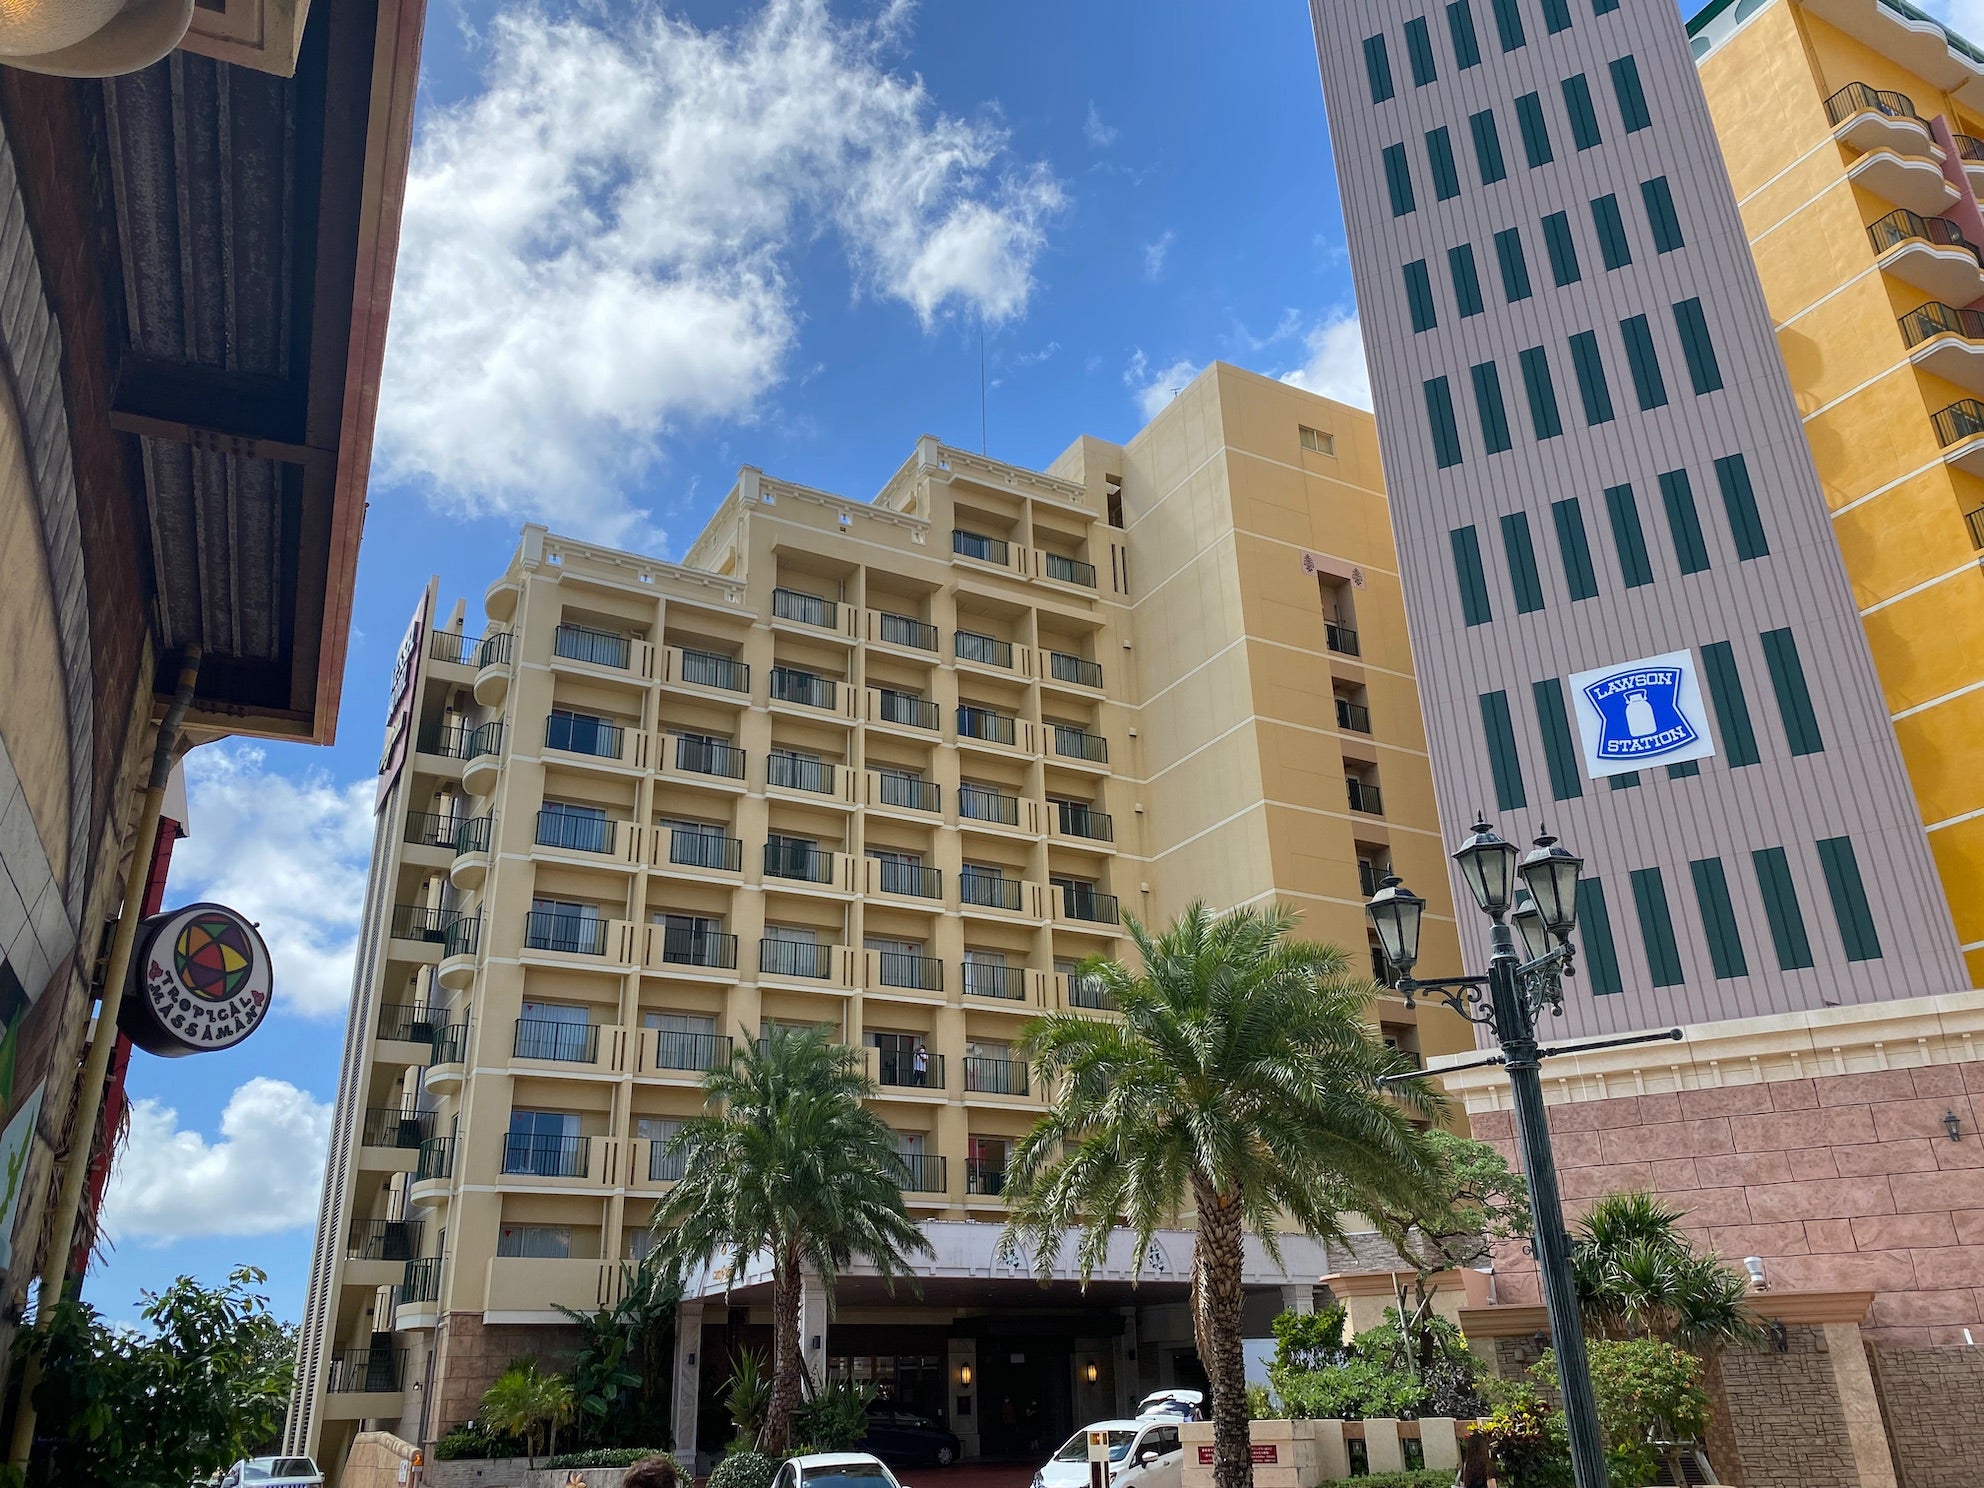 ベッセルホテルカンパーナ沖縄 | 沖縄での生活